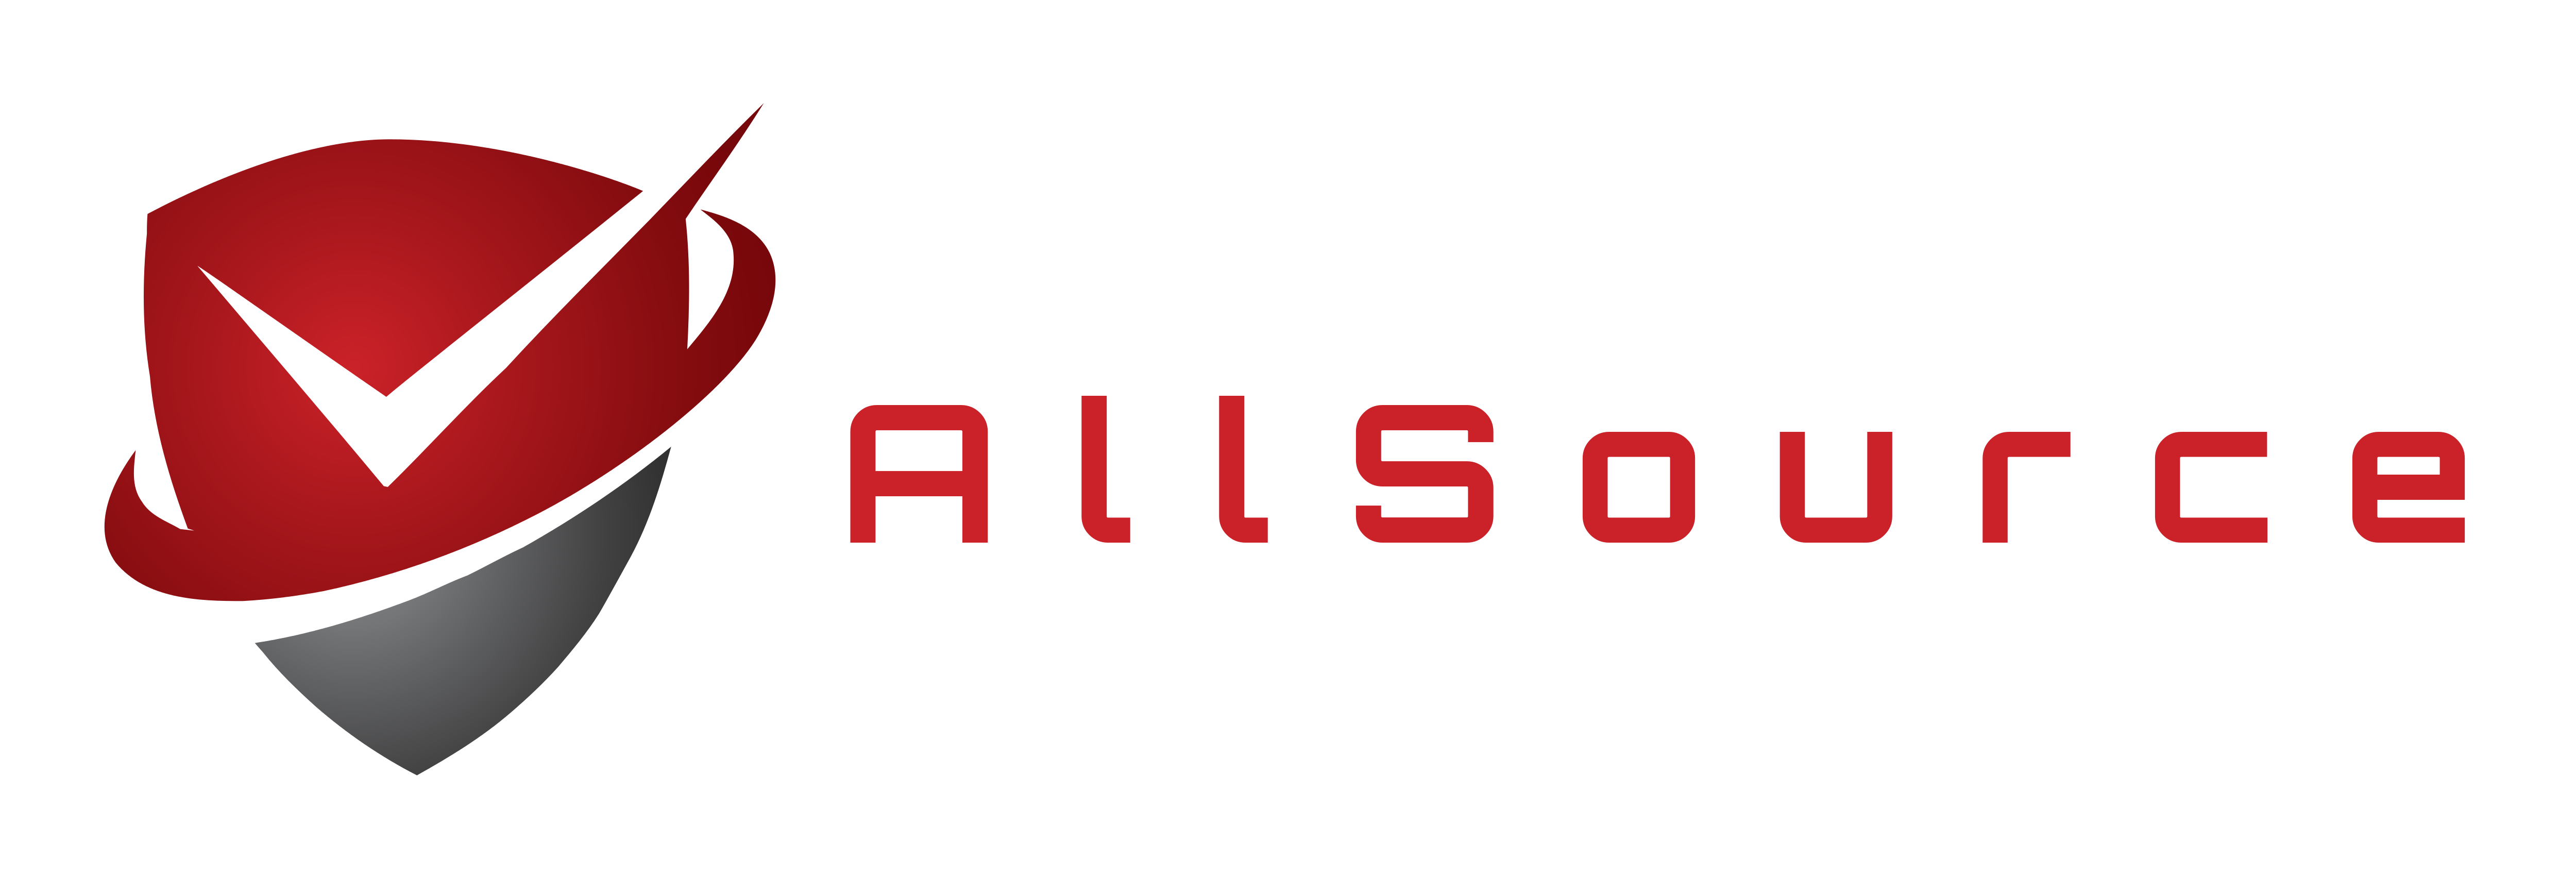 AllSource Holdings